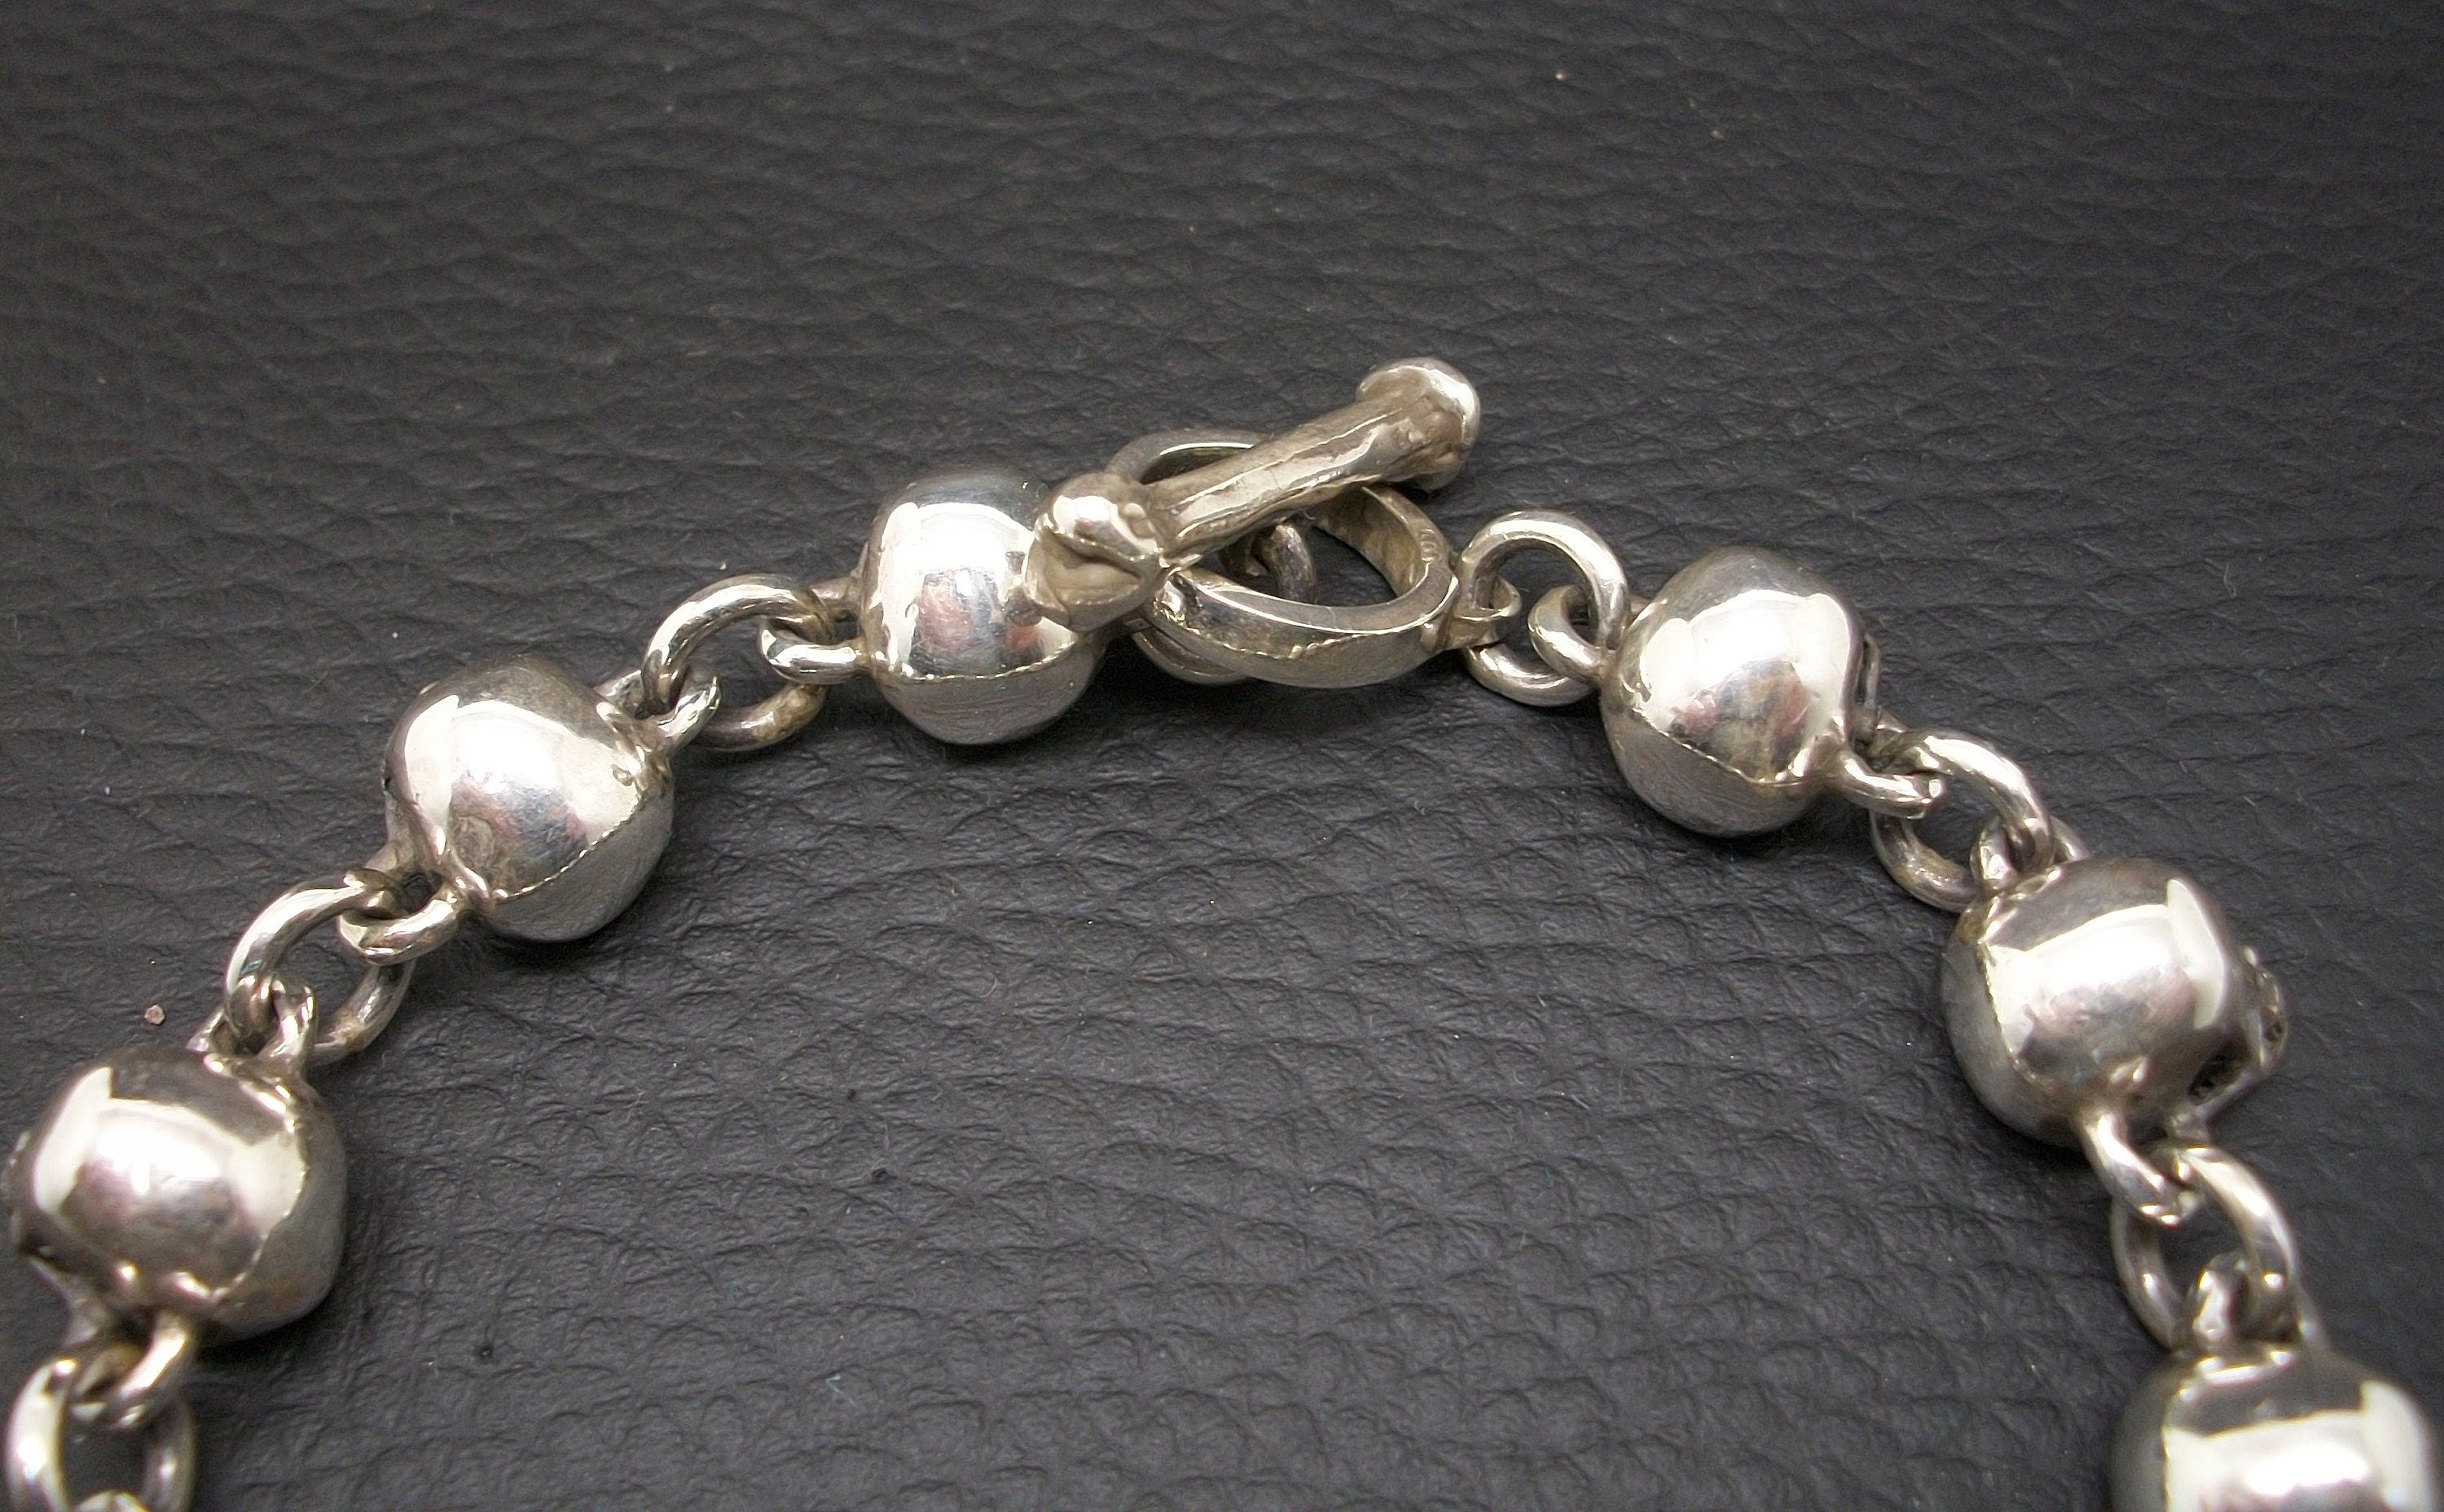 Skull Bracelet - Sterling Silver skull bracelet chain. Toggle bone closure. Full Jaw Skull